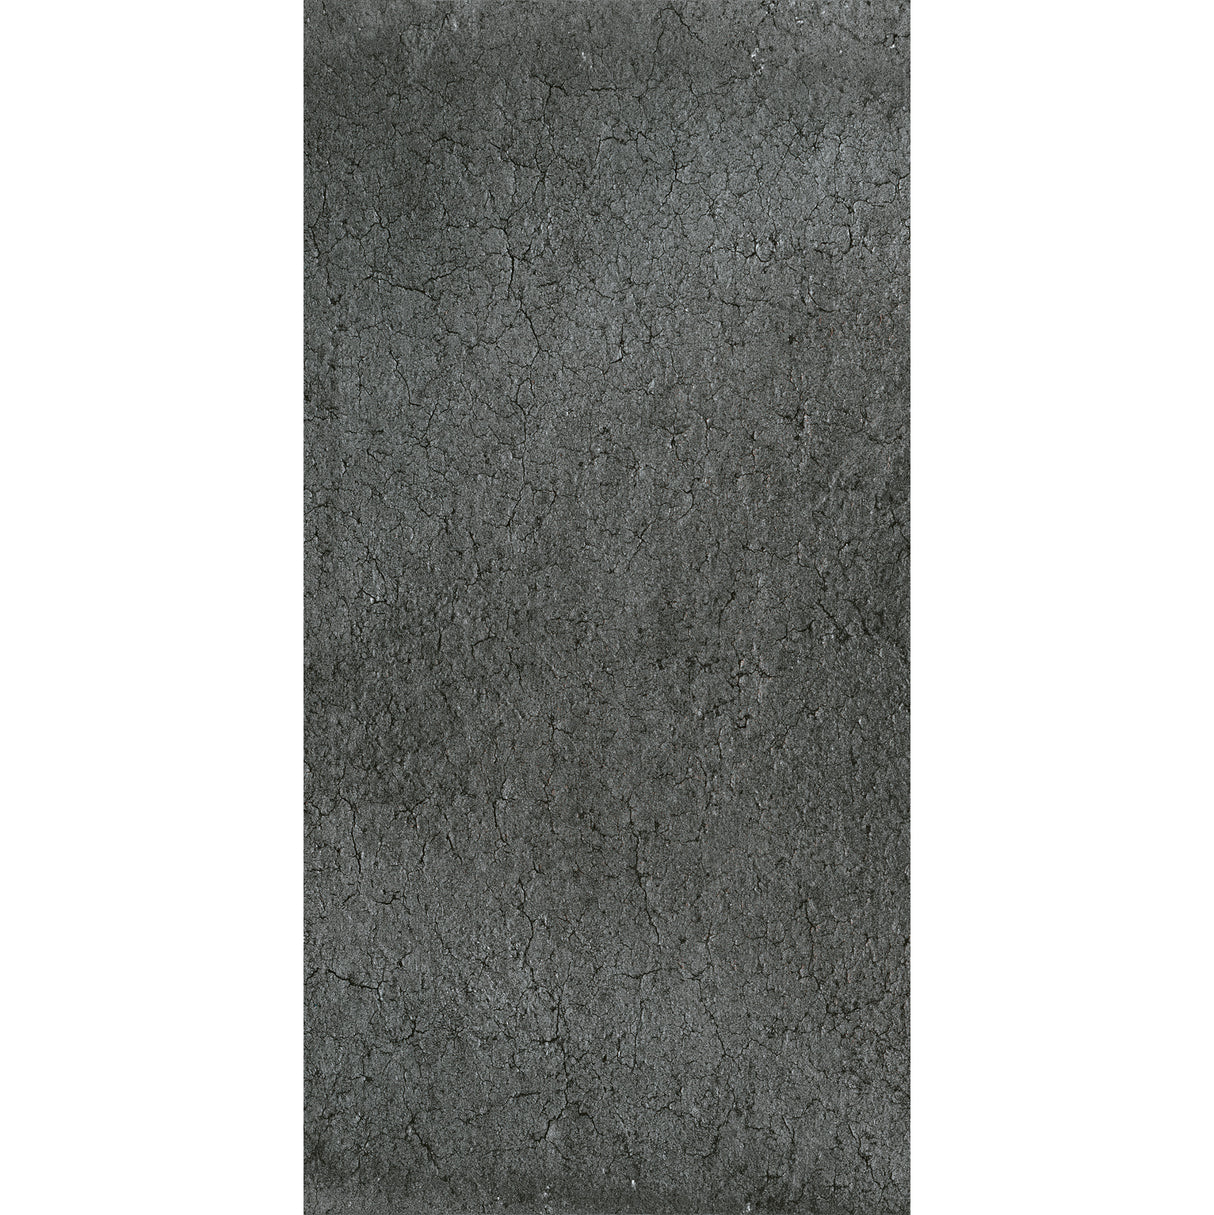 Carrelage 30x60 Stone Ash R11 Extérieur